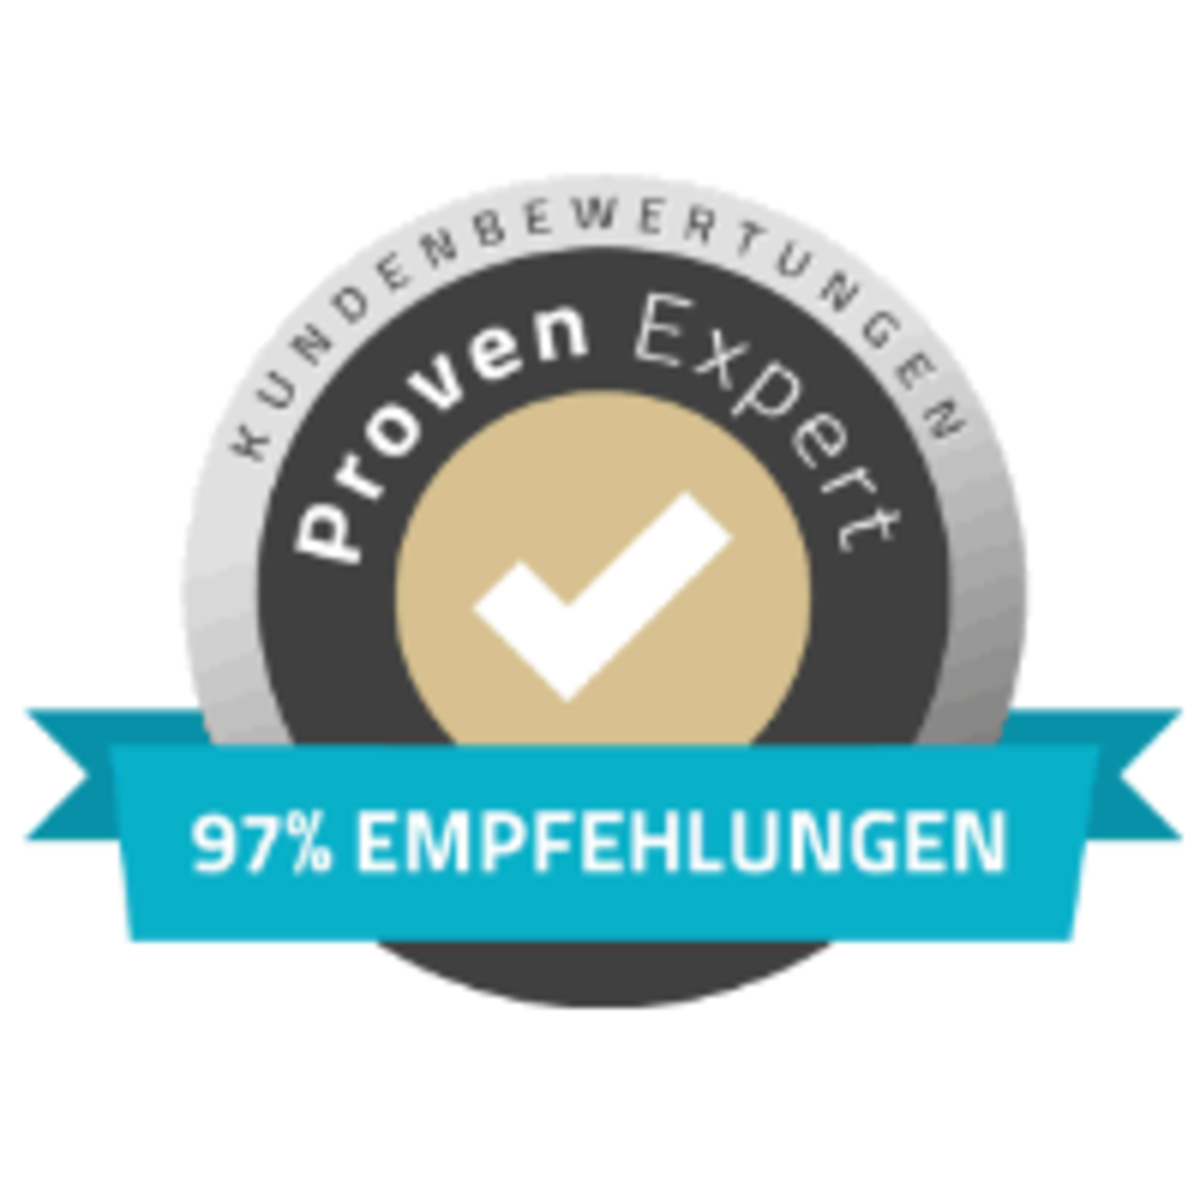 Kundenbewertungen: 97 % Empfehlungen bei Proven Expert.